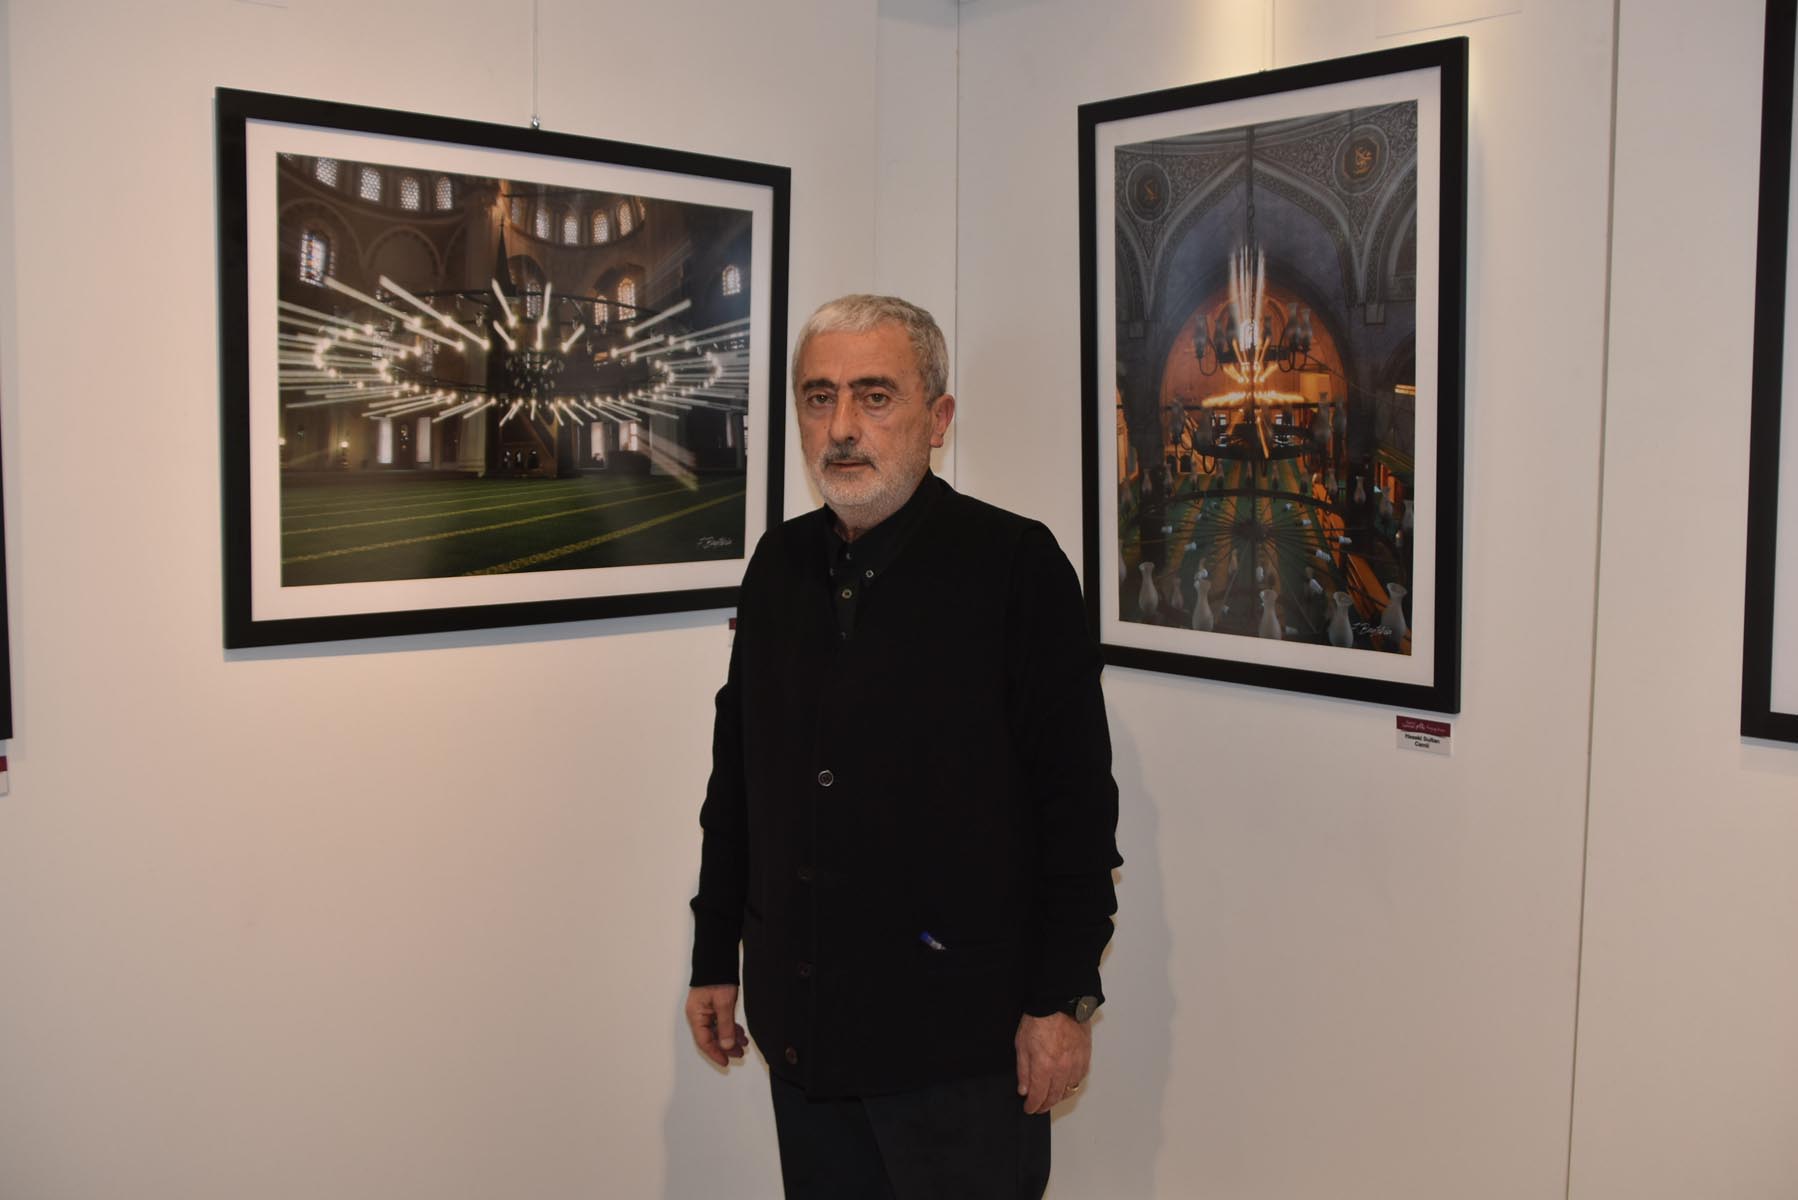 'Suriçi camileri' fotoğraf serisi açıldı: Tarihi Camiler farklı teknikle fotoğraflandı